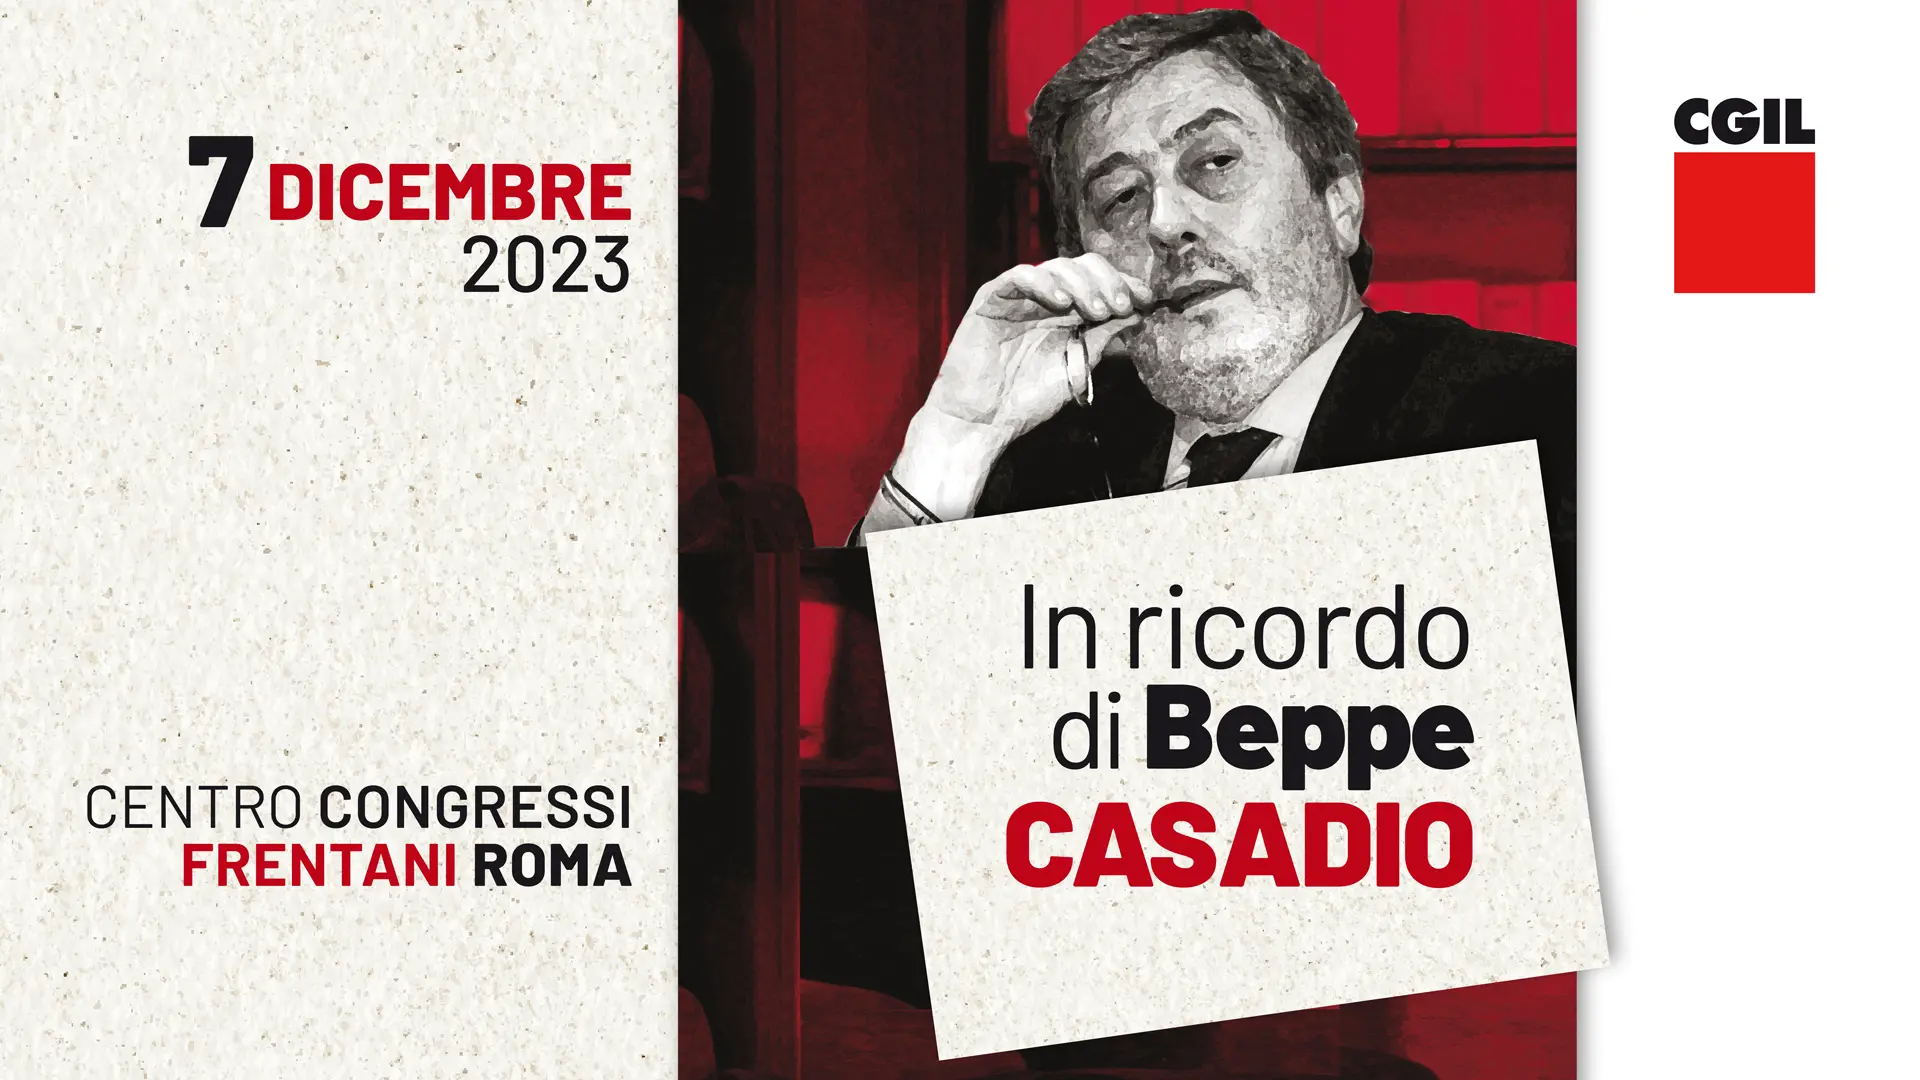 In ricordo di Beppe Casadio